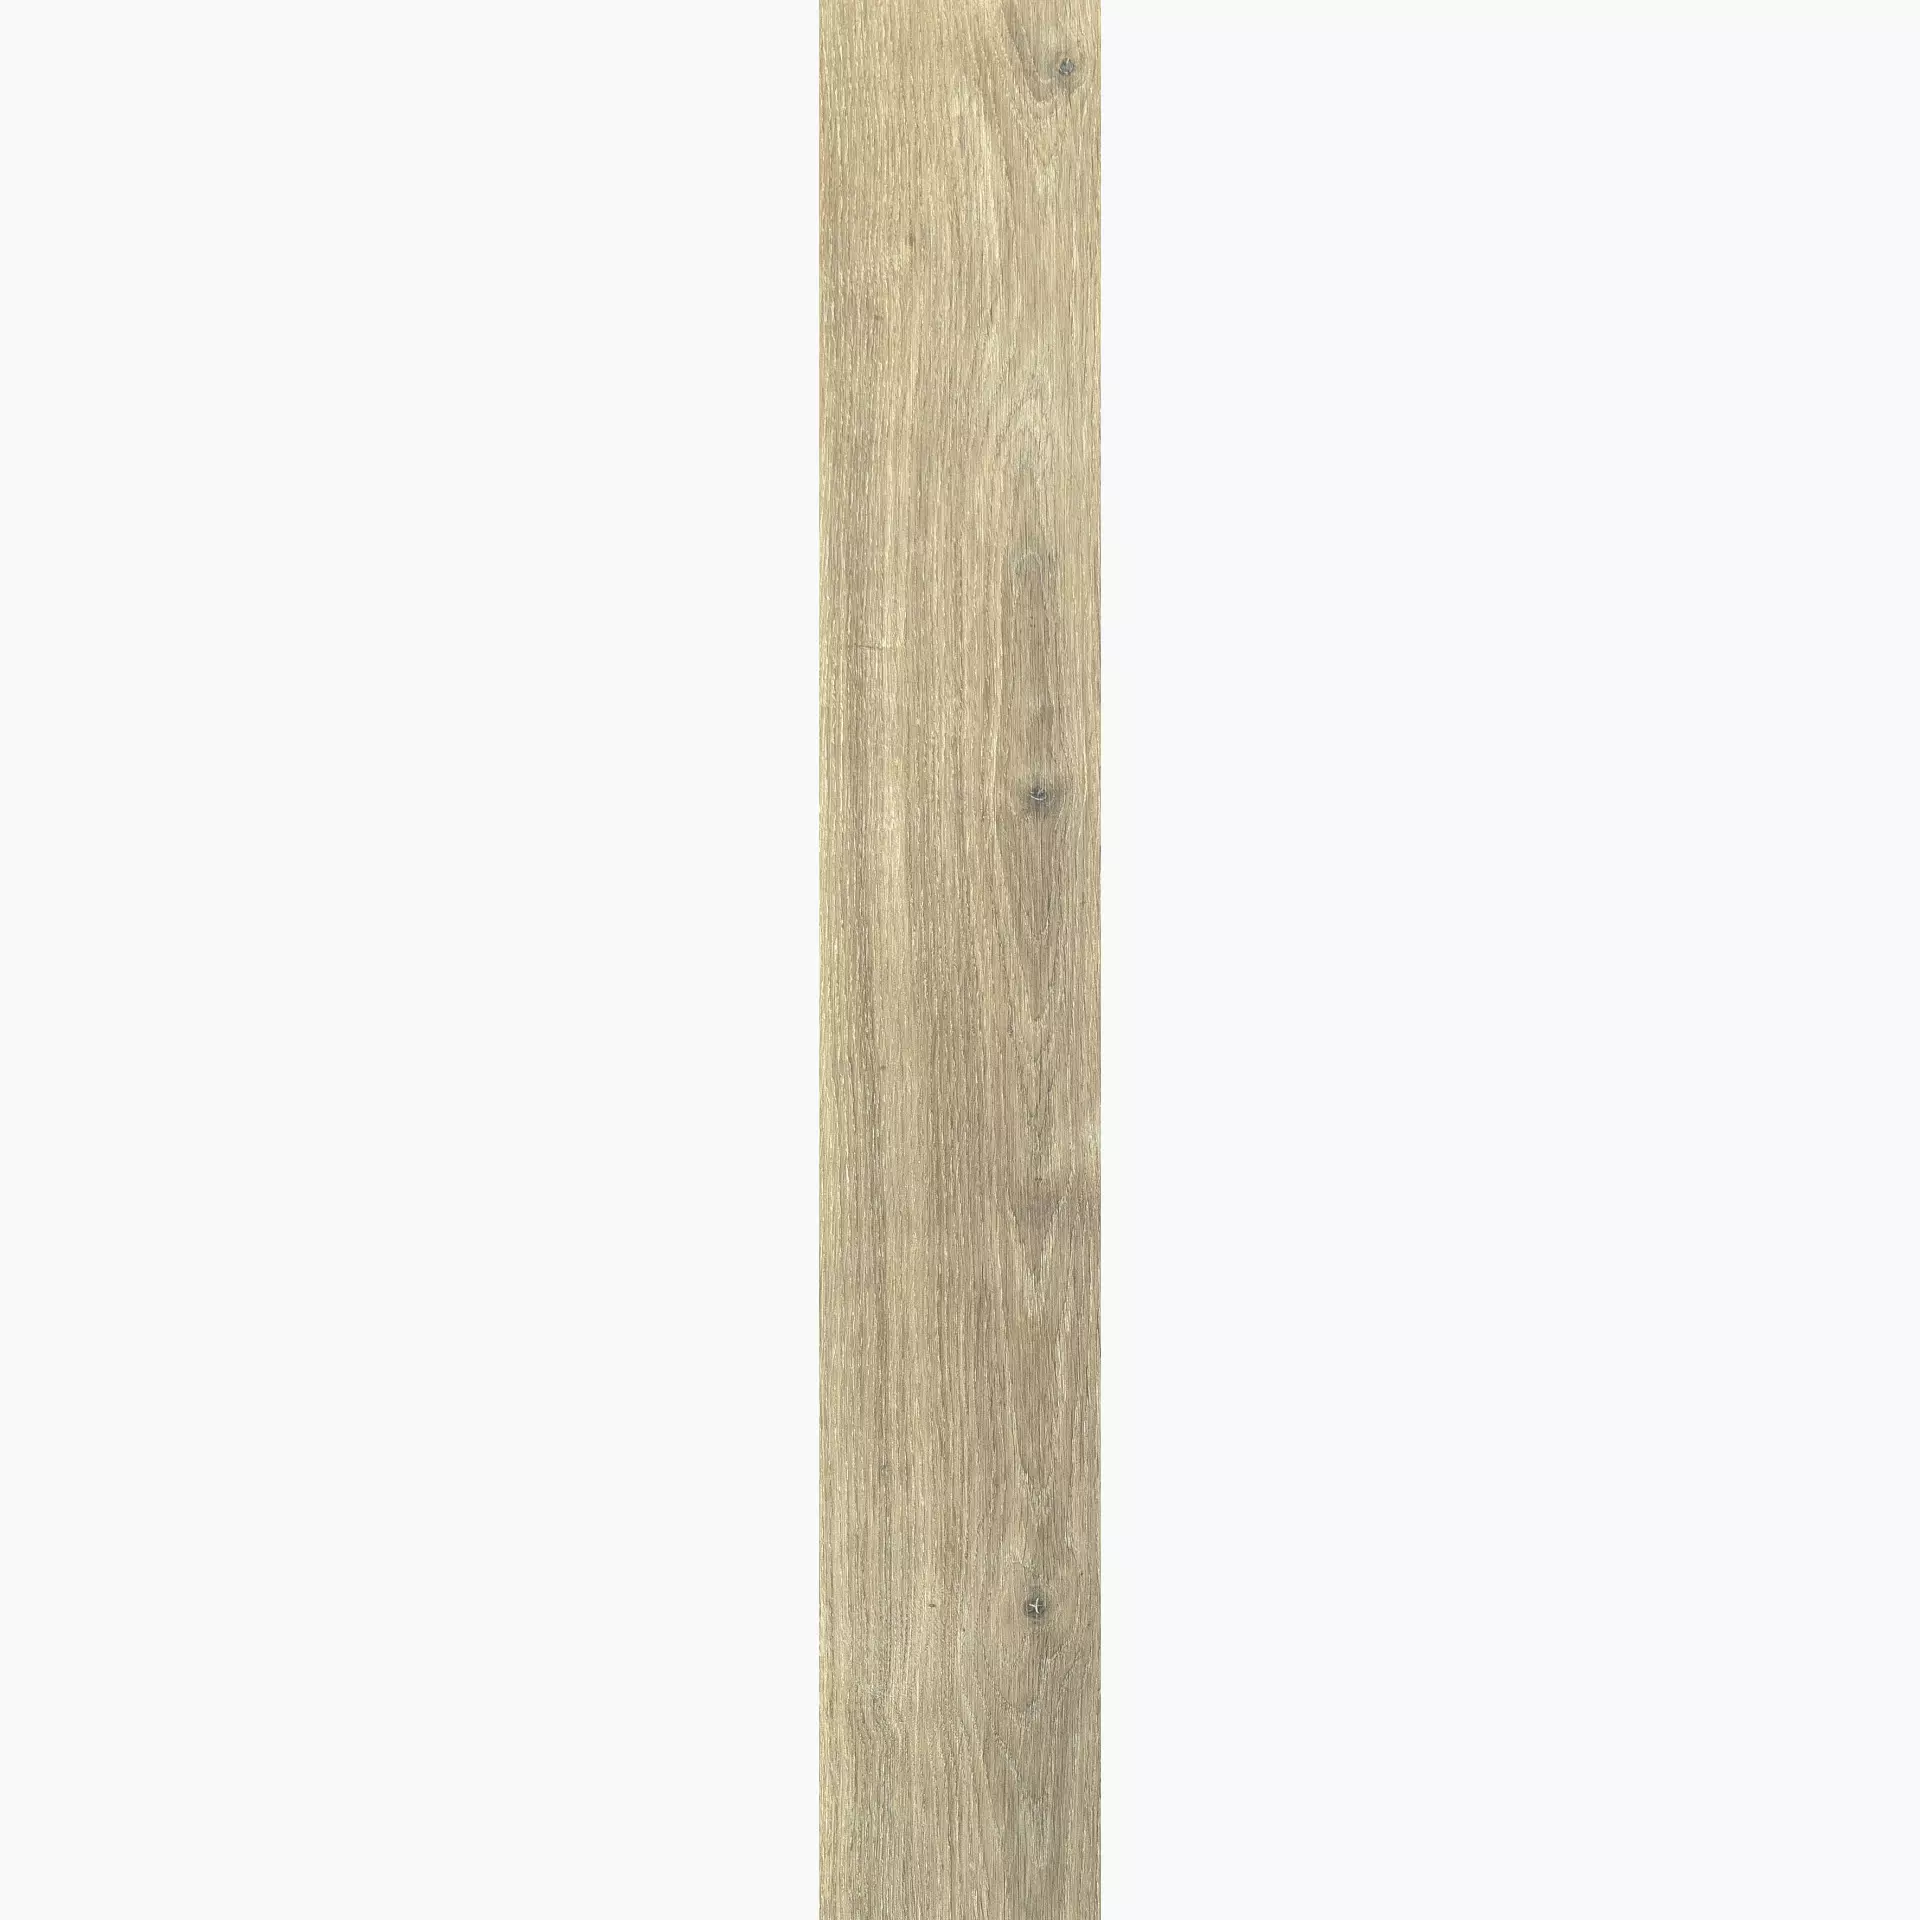 Florim Planches De Rex Miele Naturale – Matt Miele 755694 matt natur 26,5x180cm rektifiziert 9mm